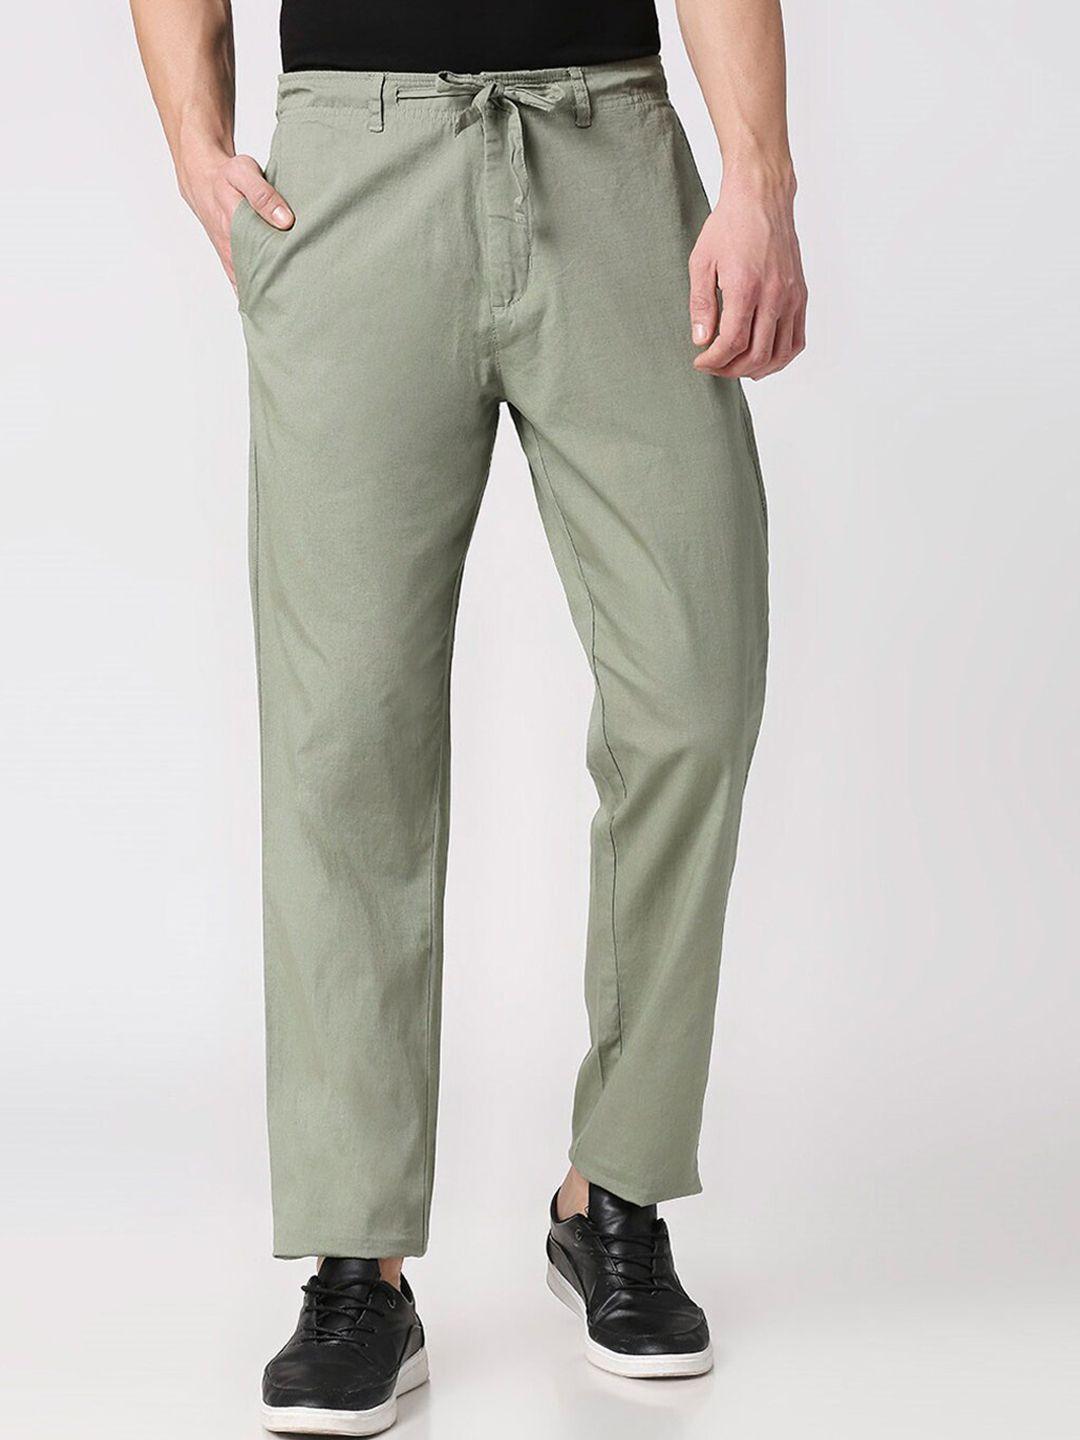 bewakoof men green solid cotton regular trousers